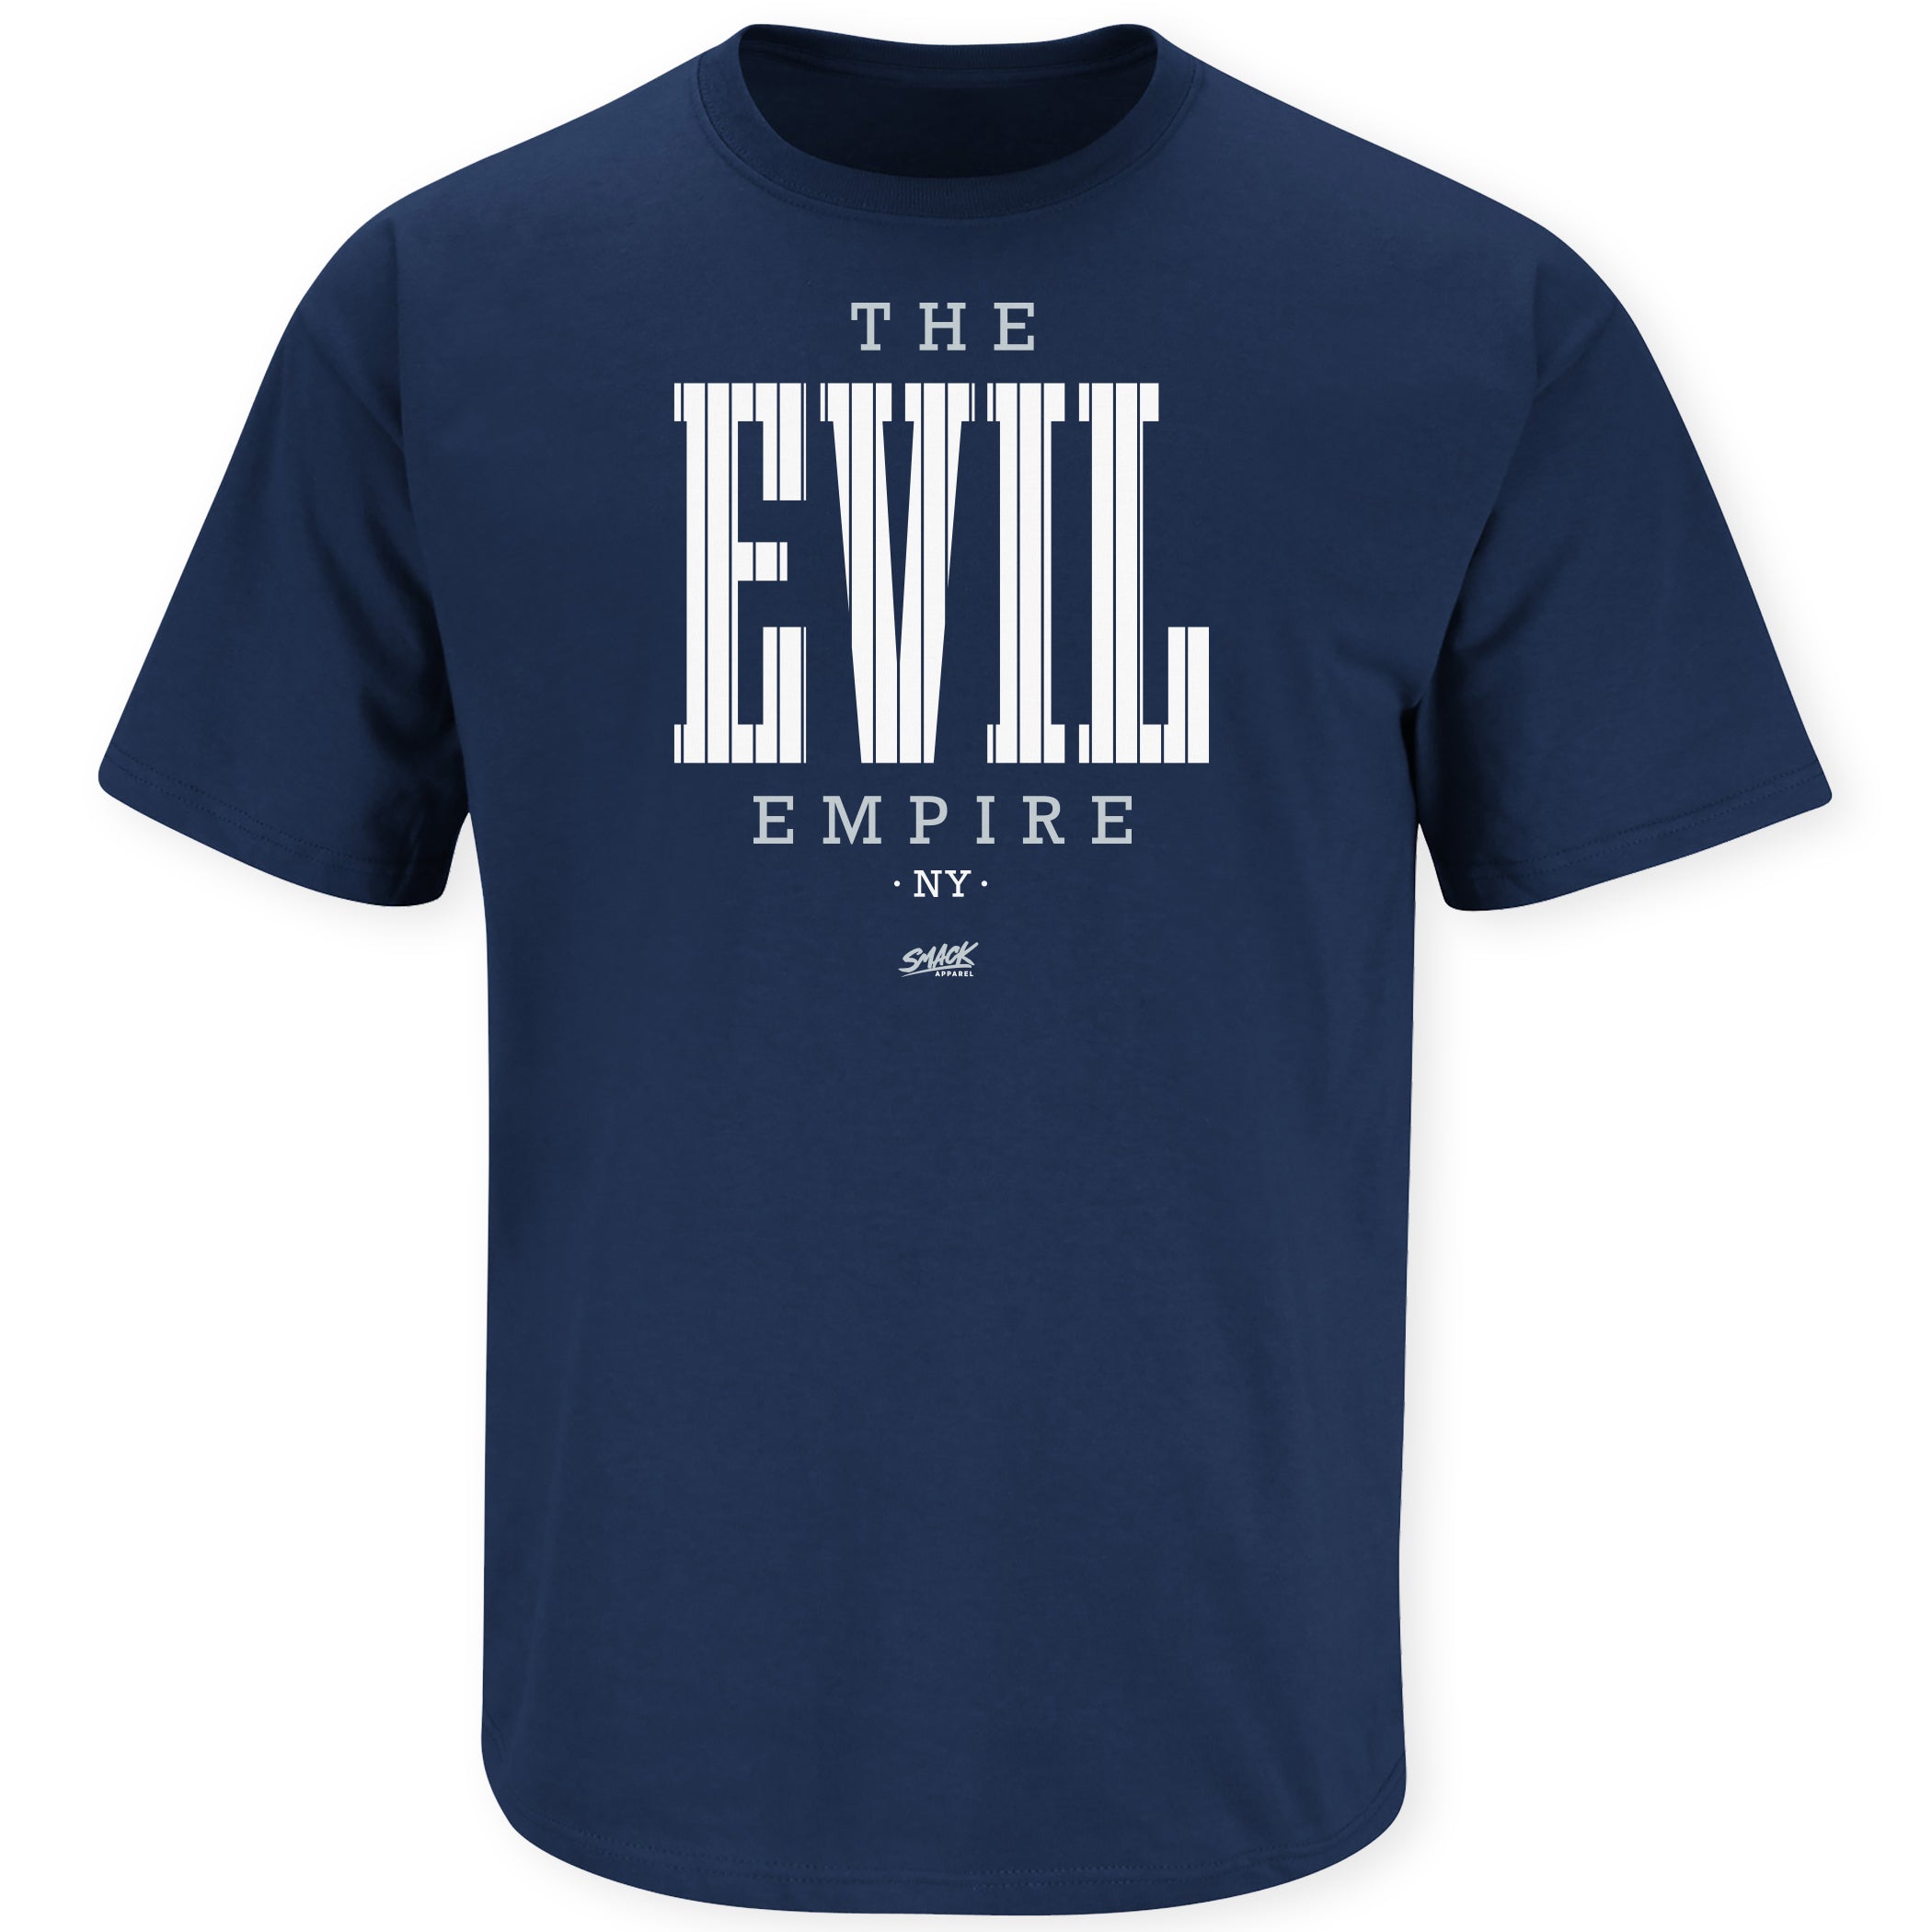 The Evil Empire T-Shirt for New York Baseball Fans (NYY) – Smack